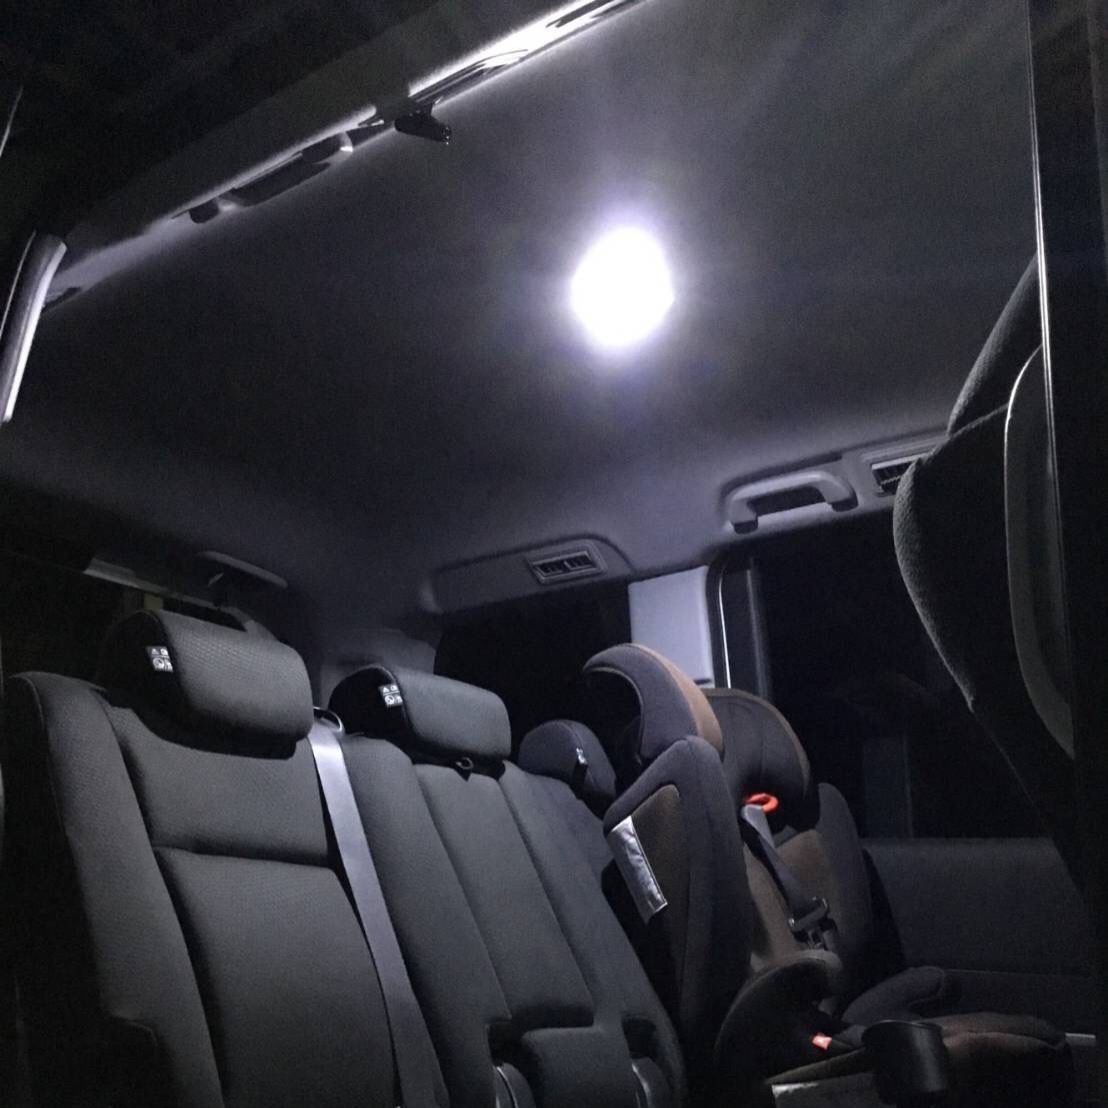 パレットSW MK21S スズキ LED ルームランプ バックランプ ナンバー灯 ポジション球 フォグランプ 室内灯 車内灯 カスタムパーツ カー用品  - メルカリ